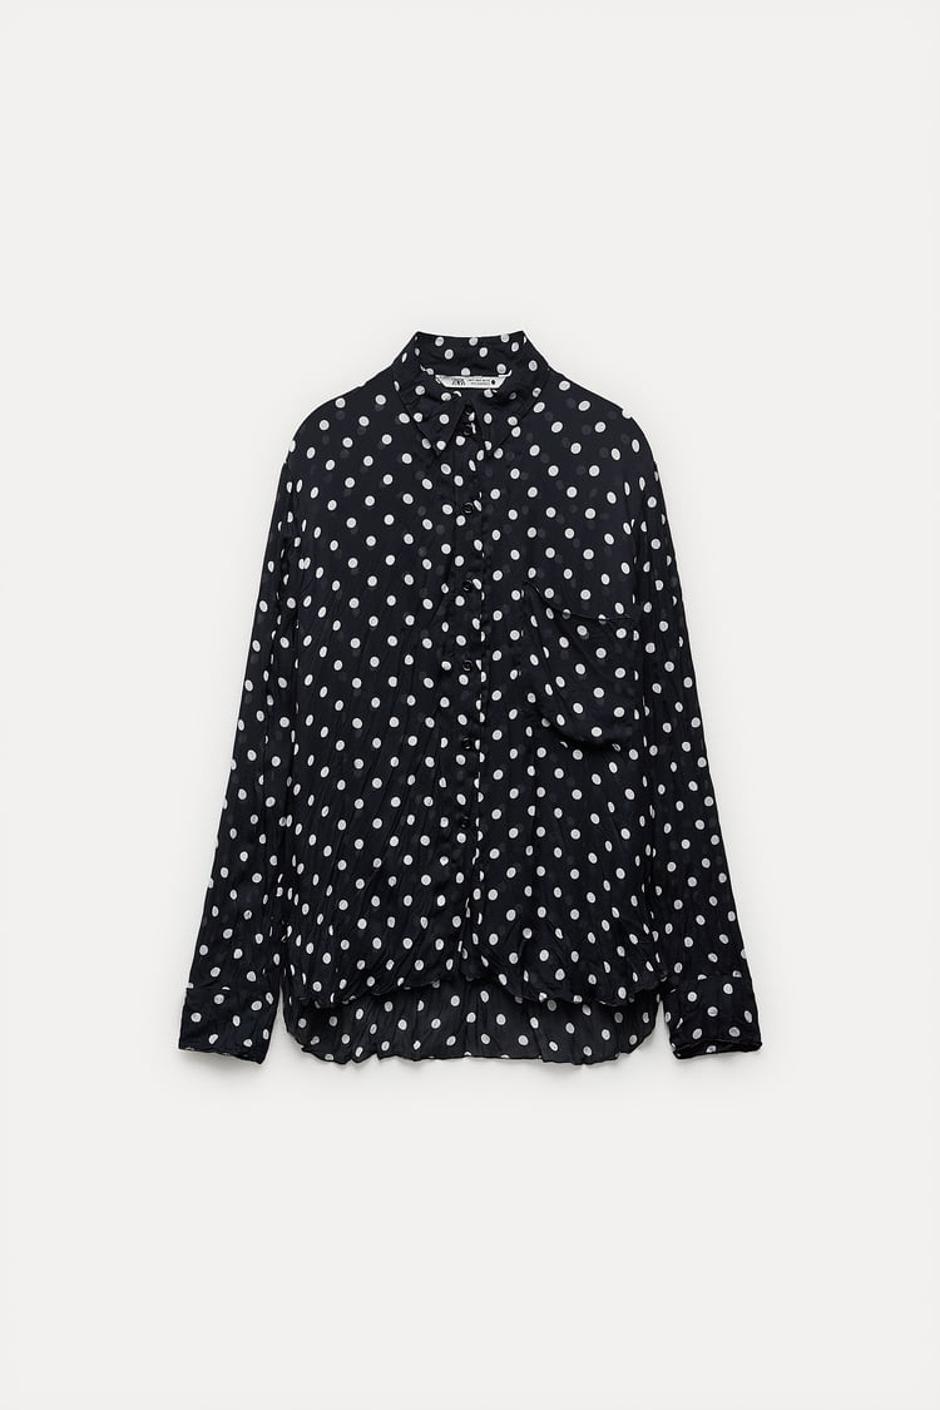 Zara košulja točkastog uzorka | Autor: Zara